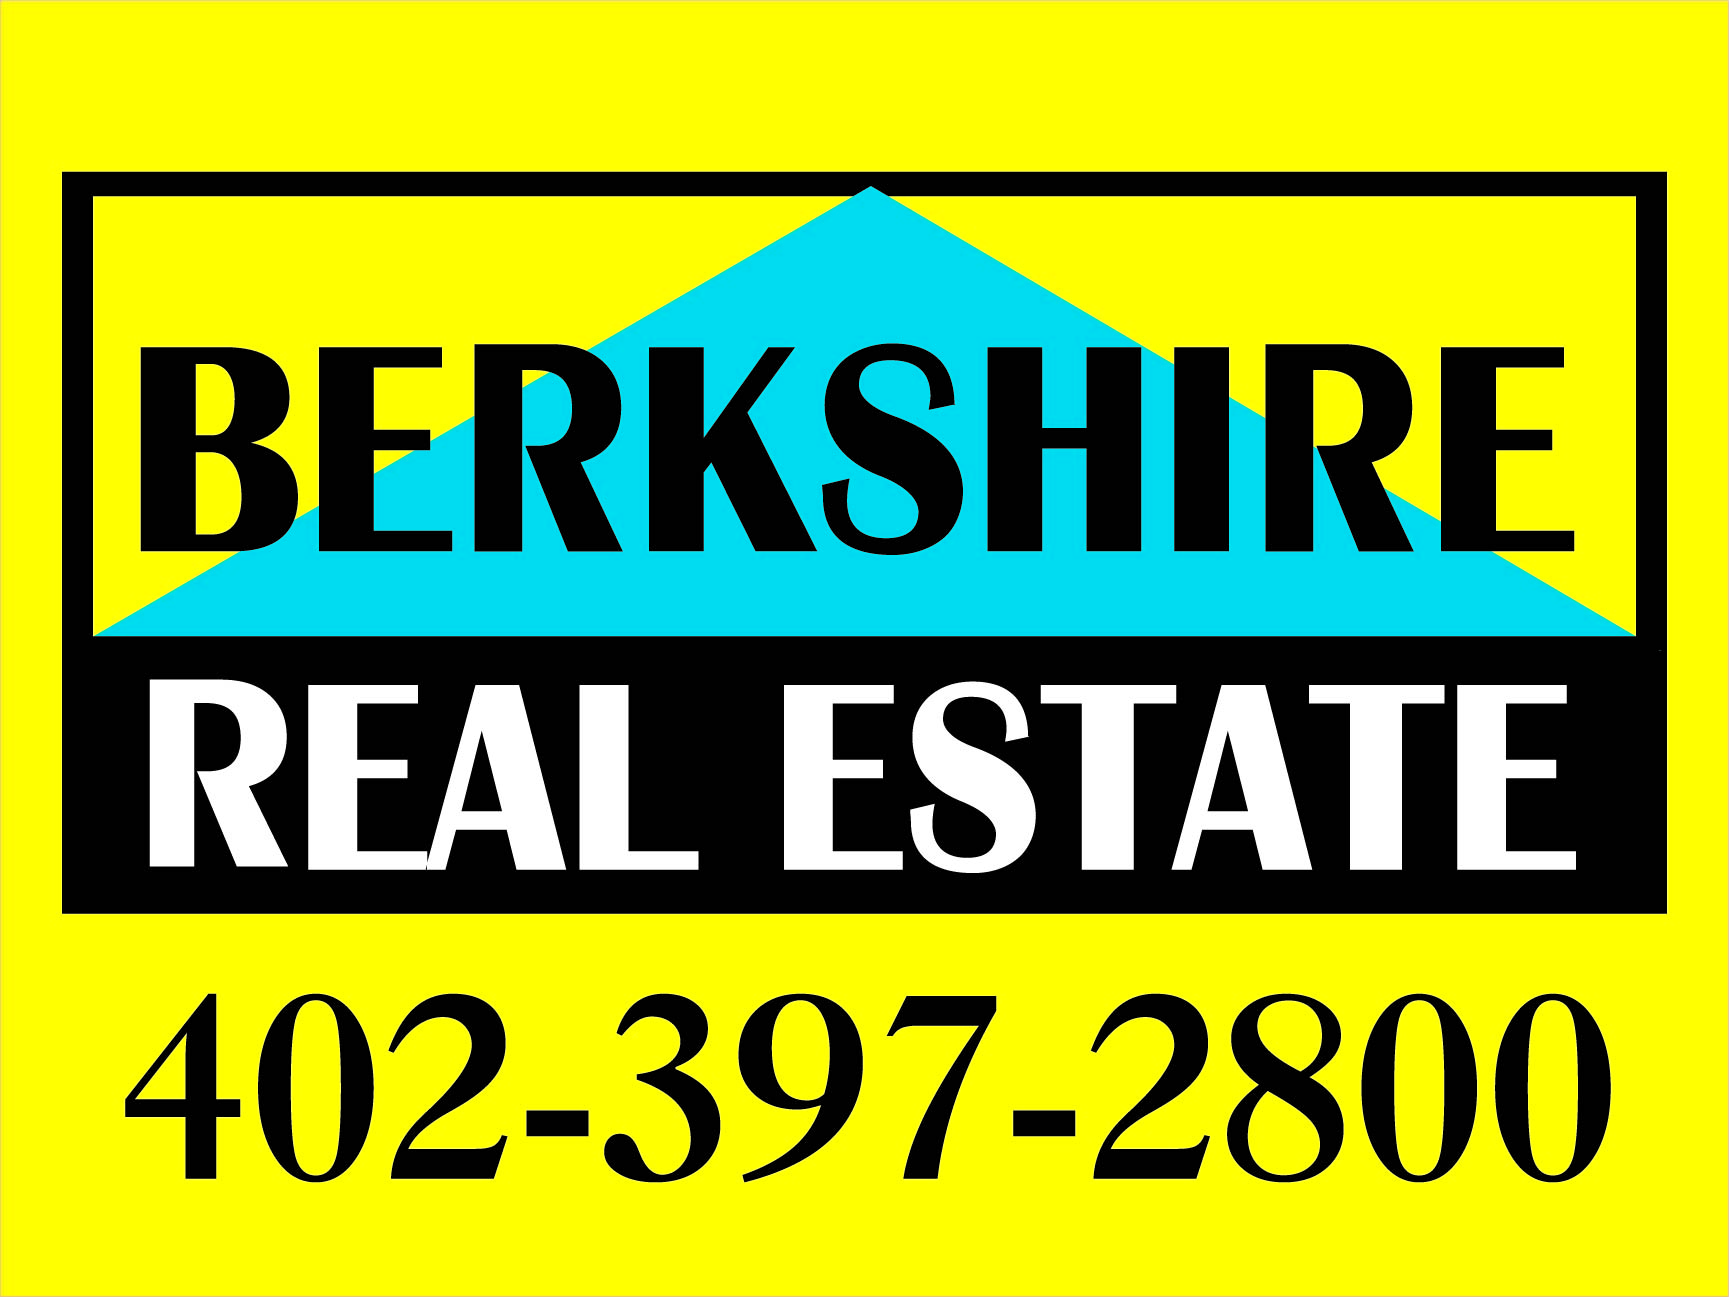 Berkshire Real Estate